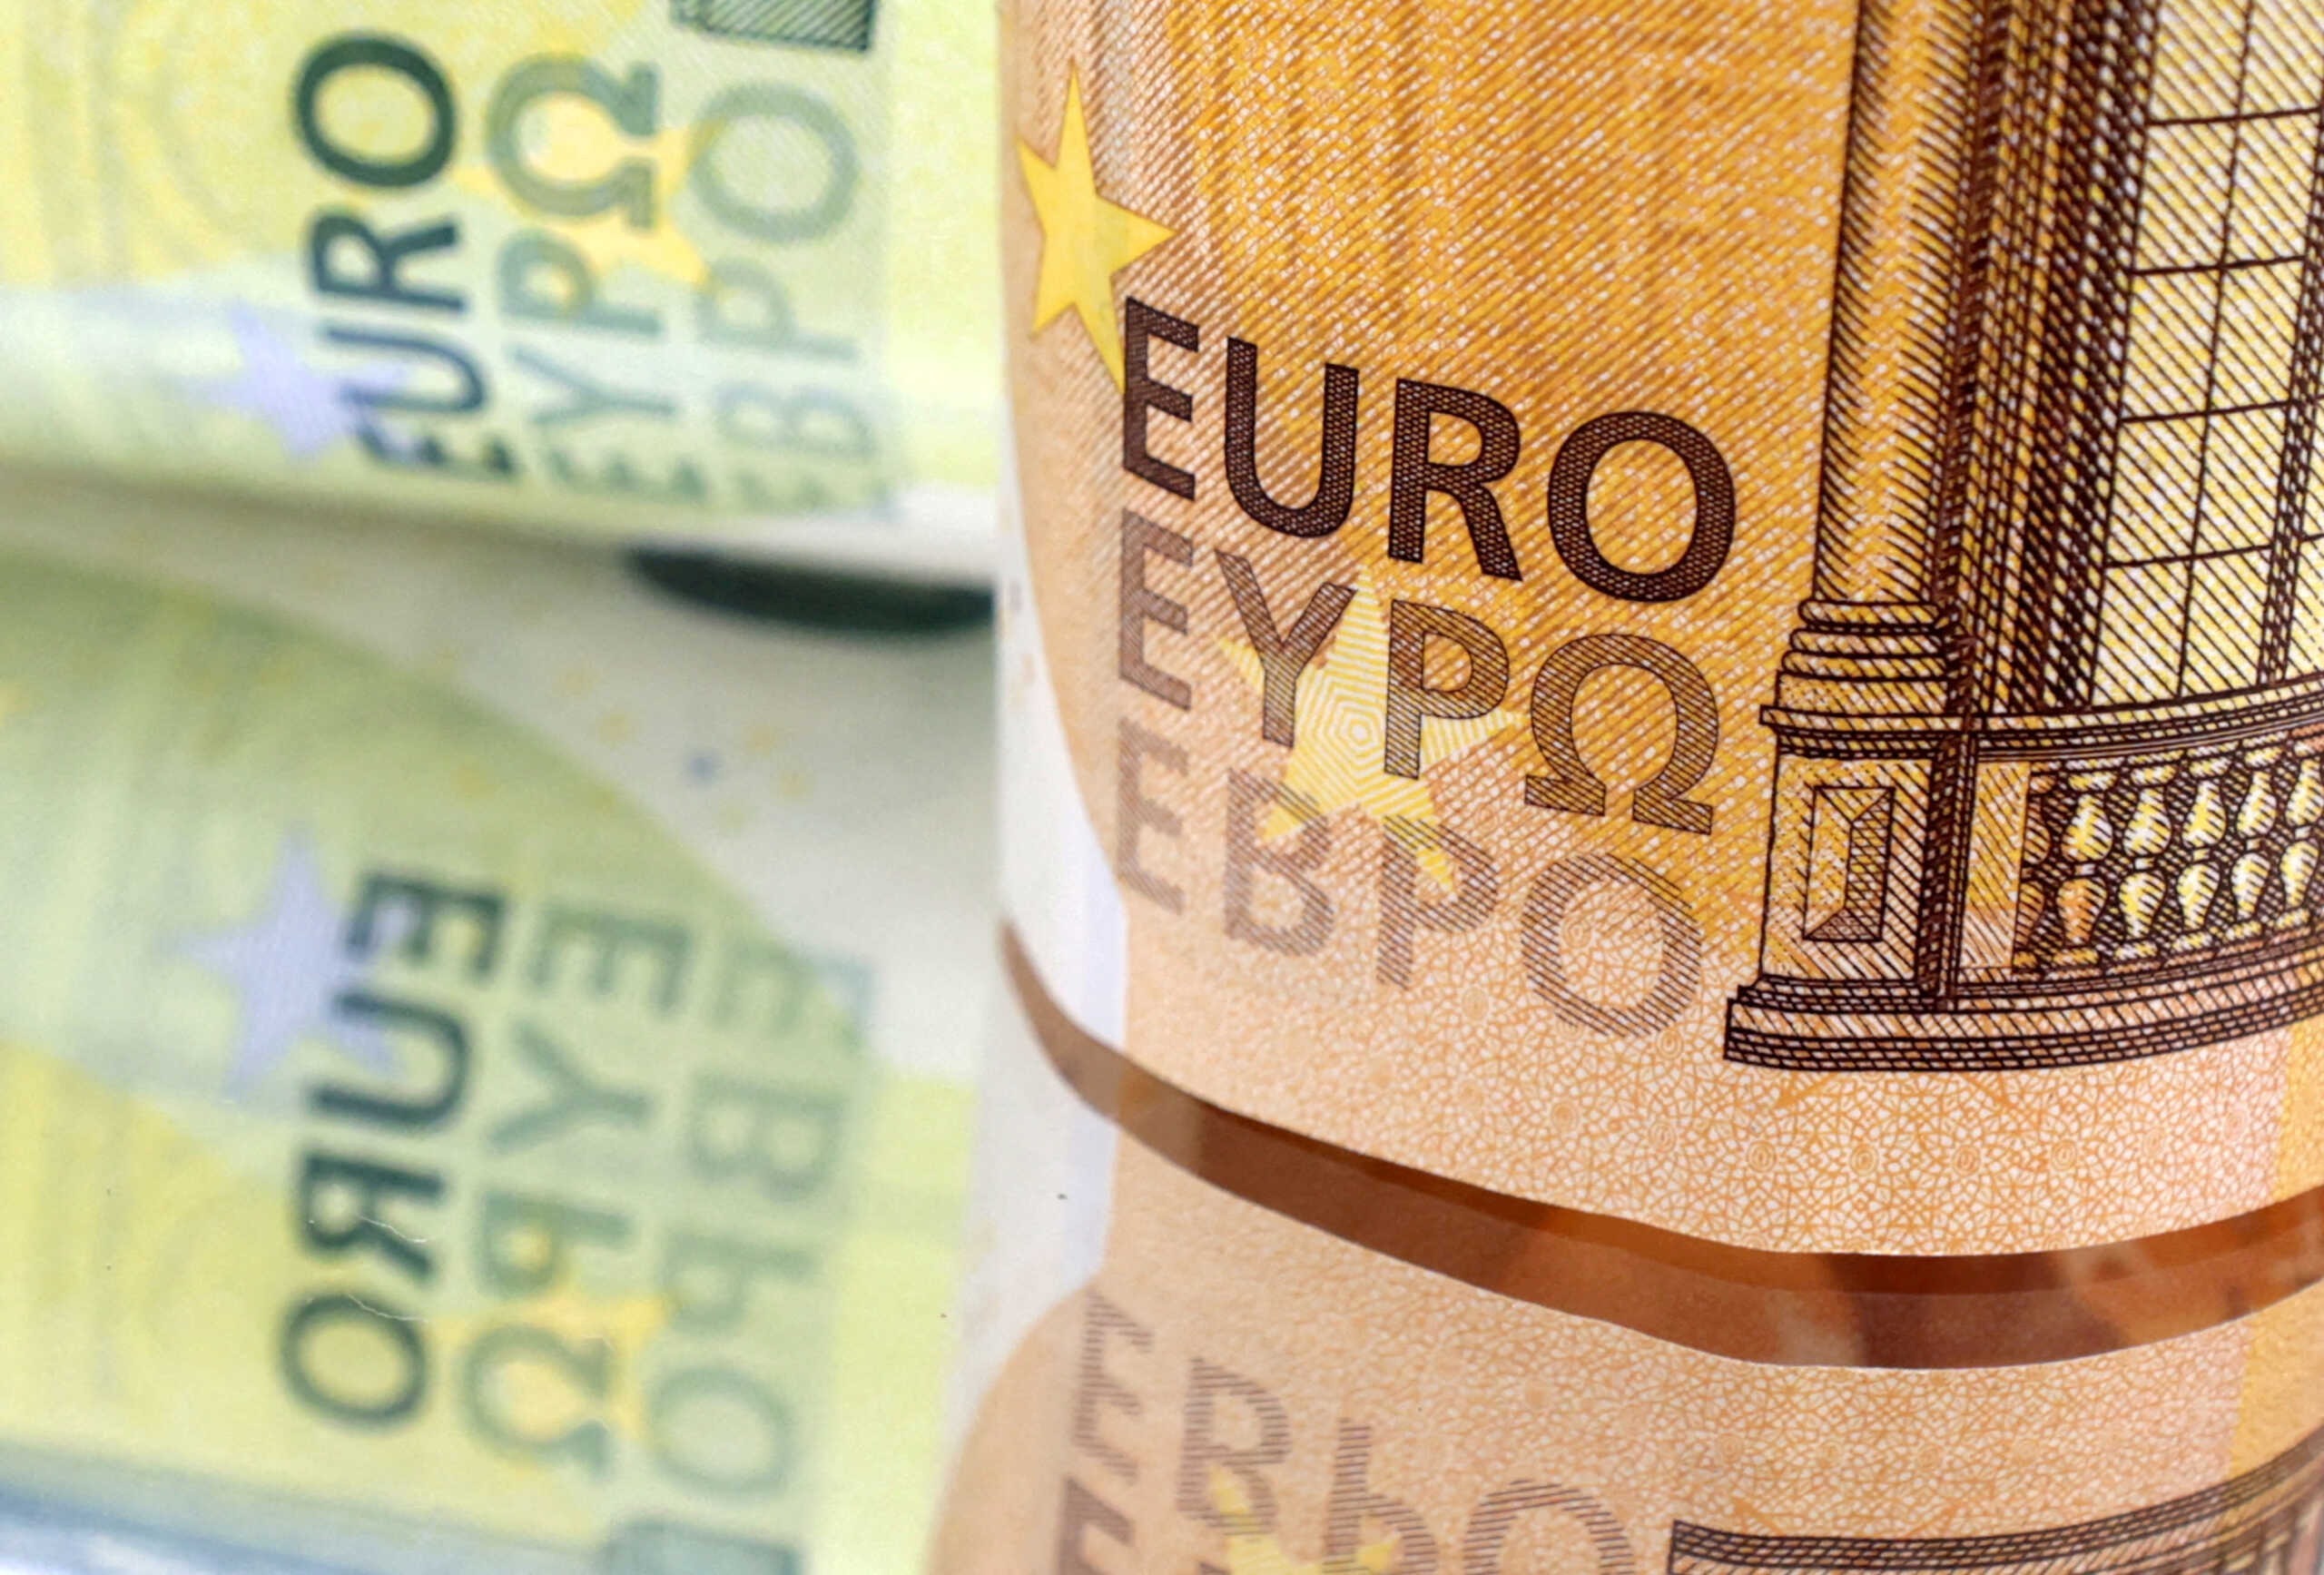 ΟΔΔΗΧ: Αντλήθηκαν 600 εκατ. ευρώ σε δημοπρασία εντόκων γραμματίων 13 εβδομάδων